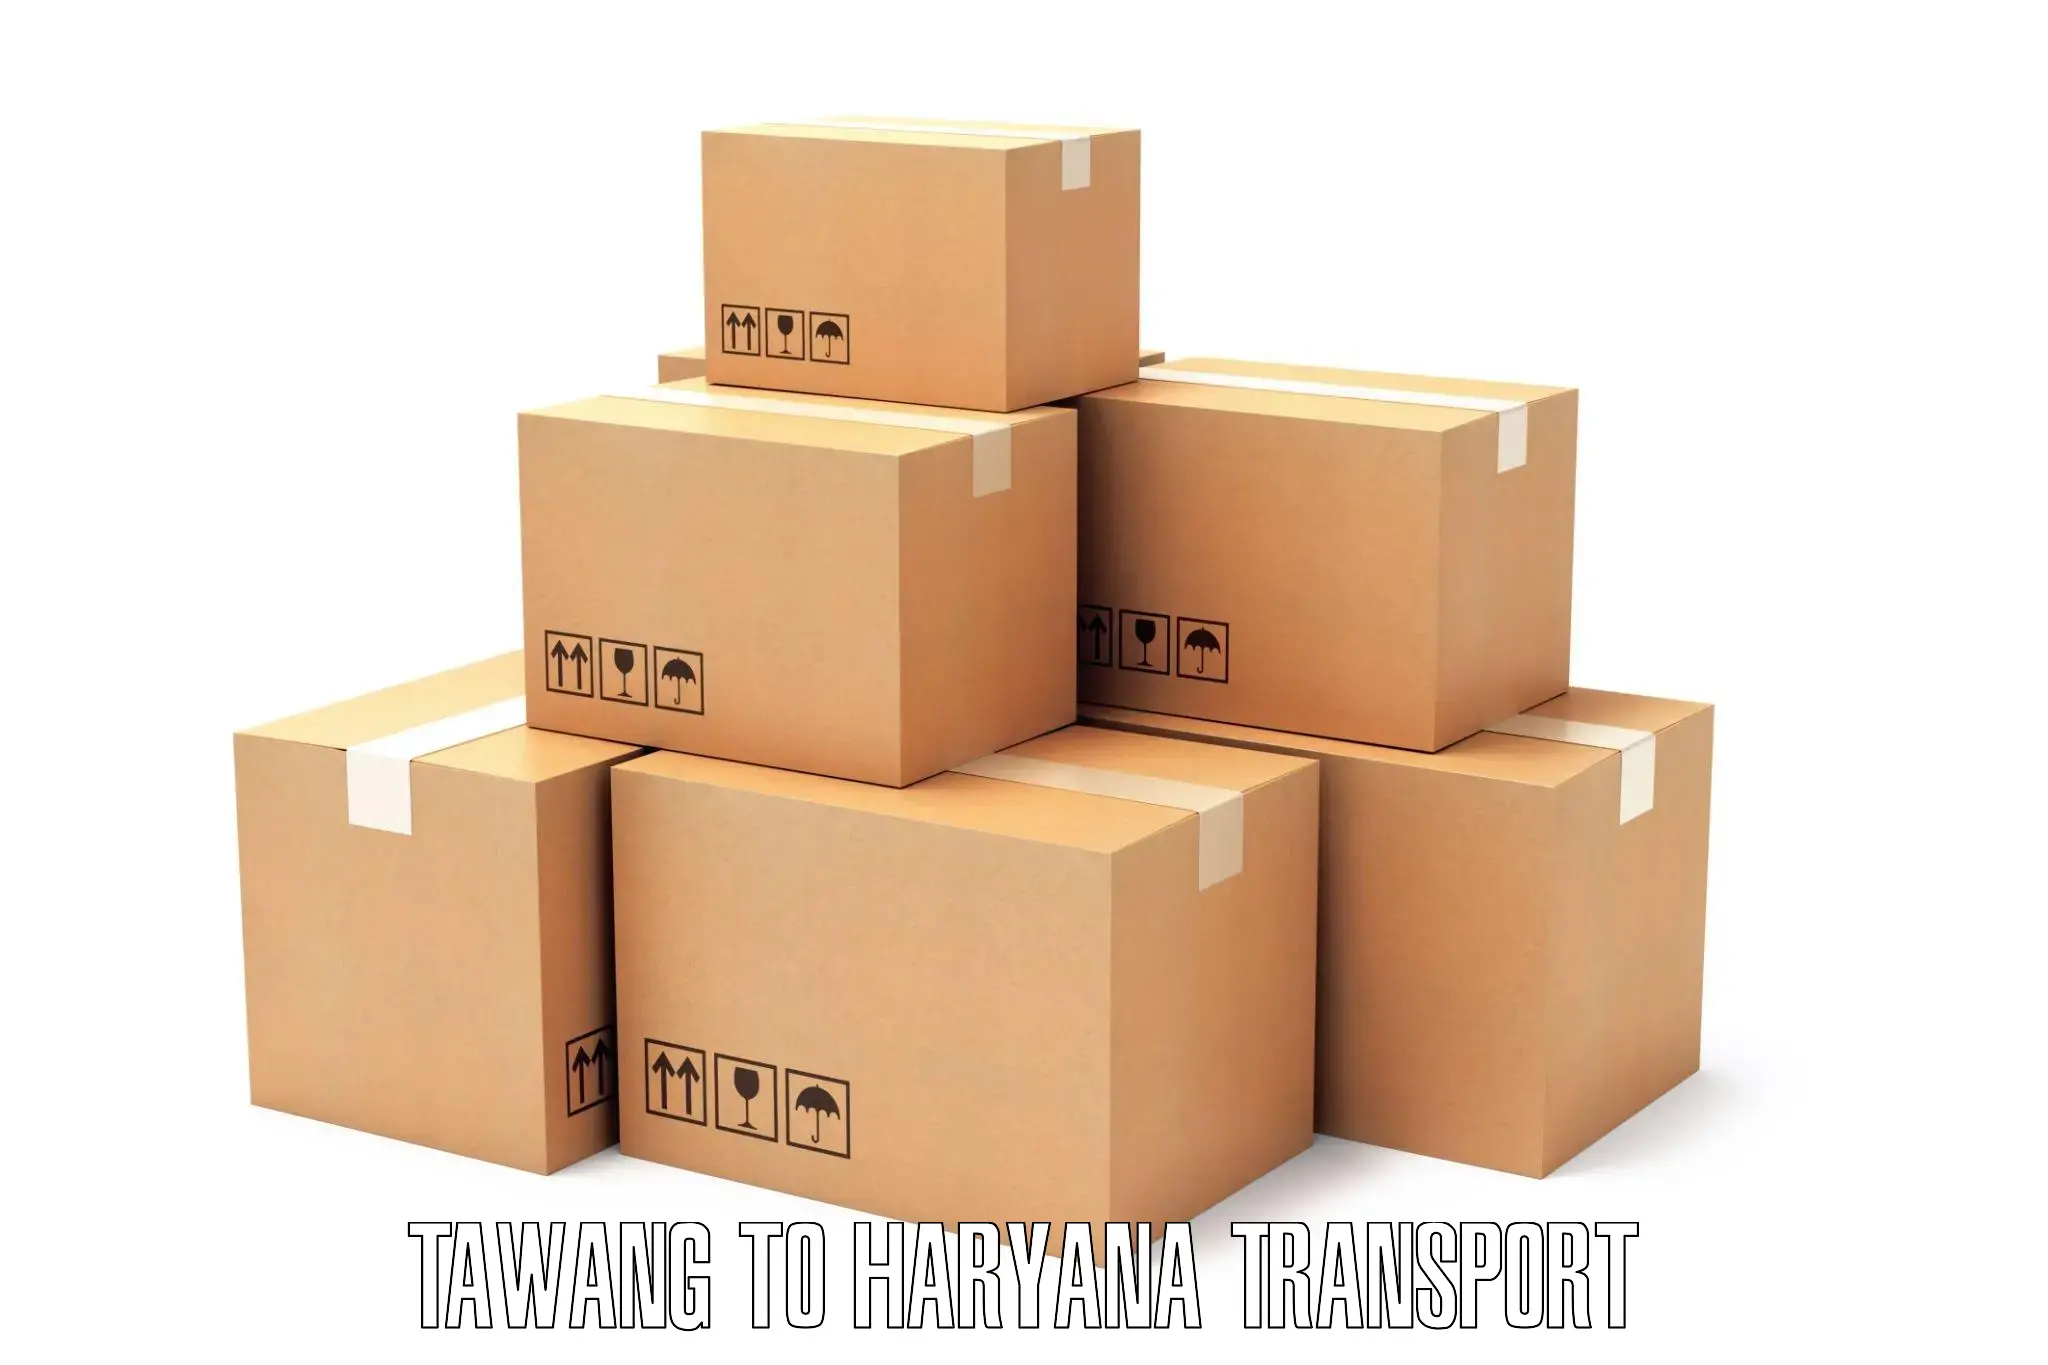 Furniture transport service Tawang to Gurugram